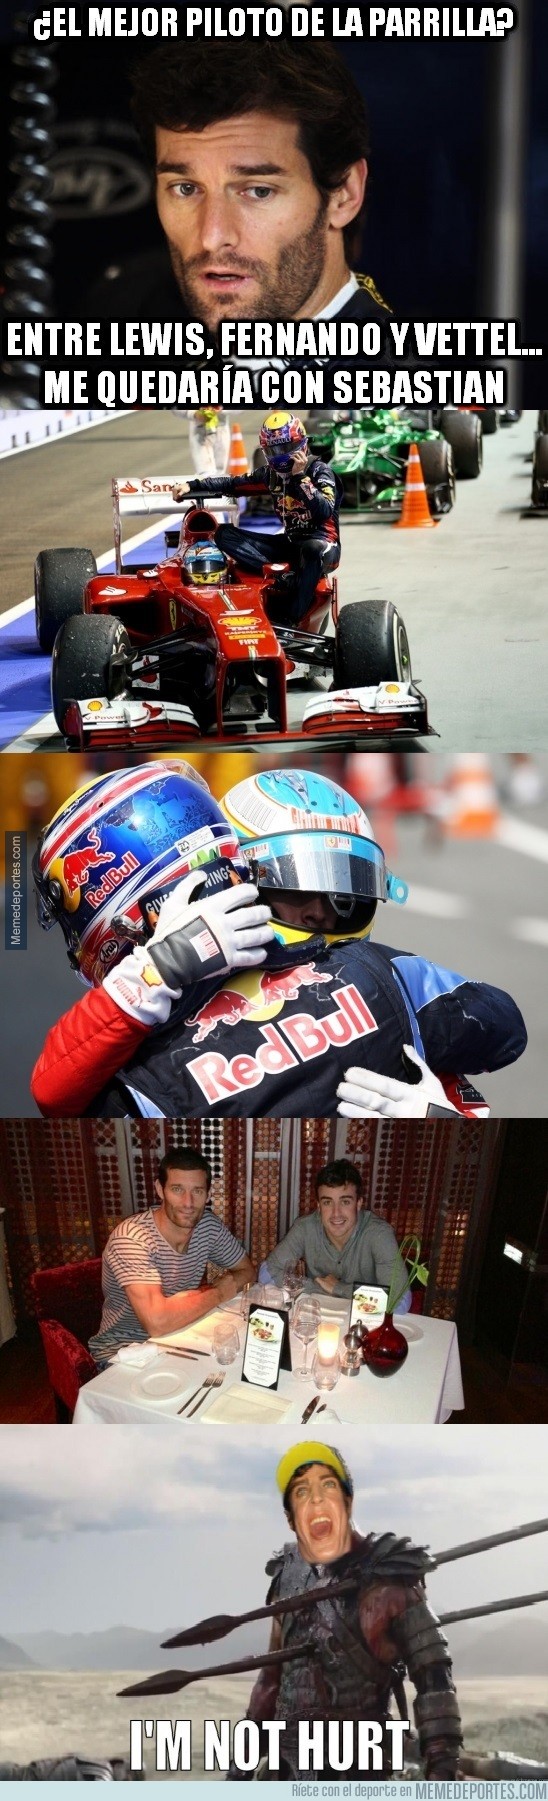 795379 - Webber elige mejor piloto de la parrilla. Alonso no está nada dolido